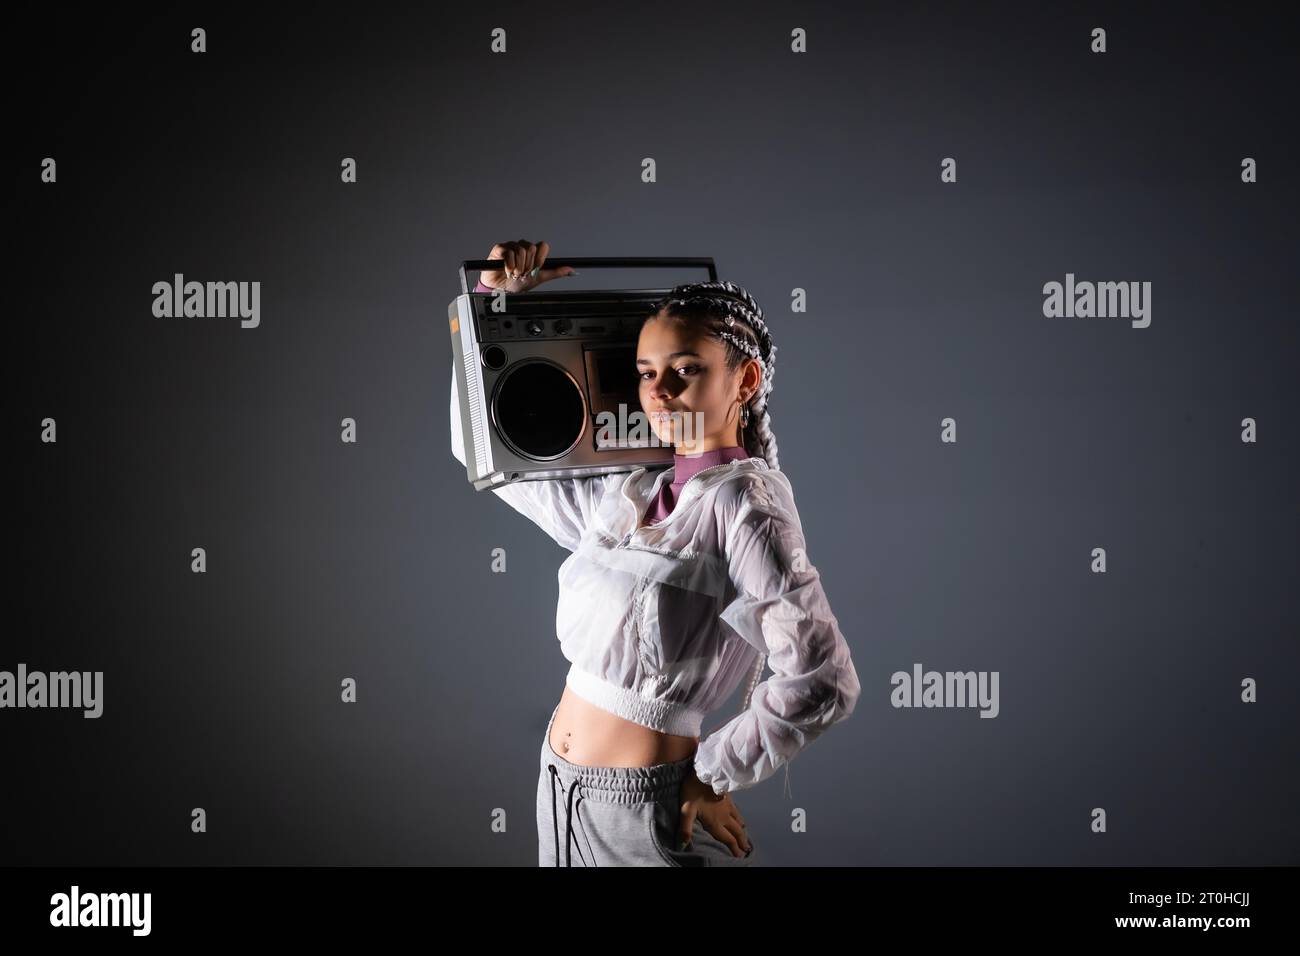 Ritratto di una giovane ragazza con trecce bianche con boombox vintage, sfondo nero, stile 80s, fotografia retrò Foto Stock